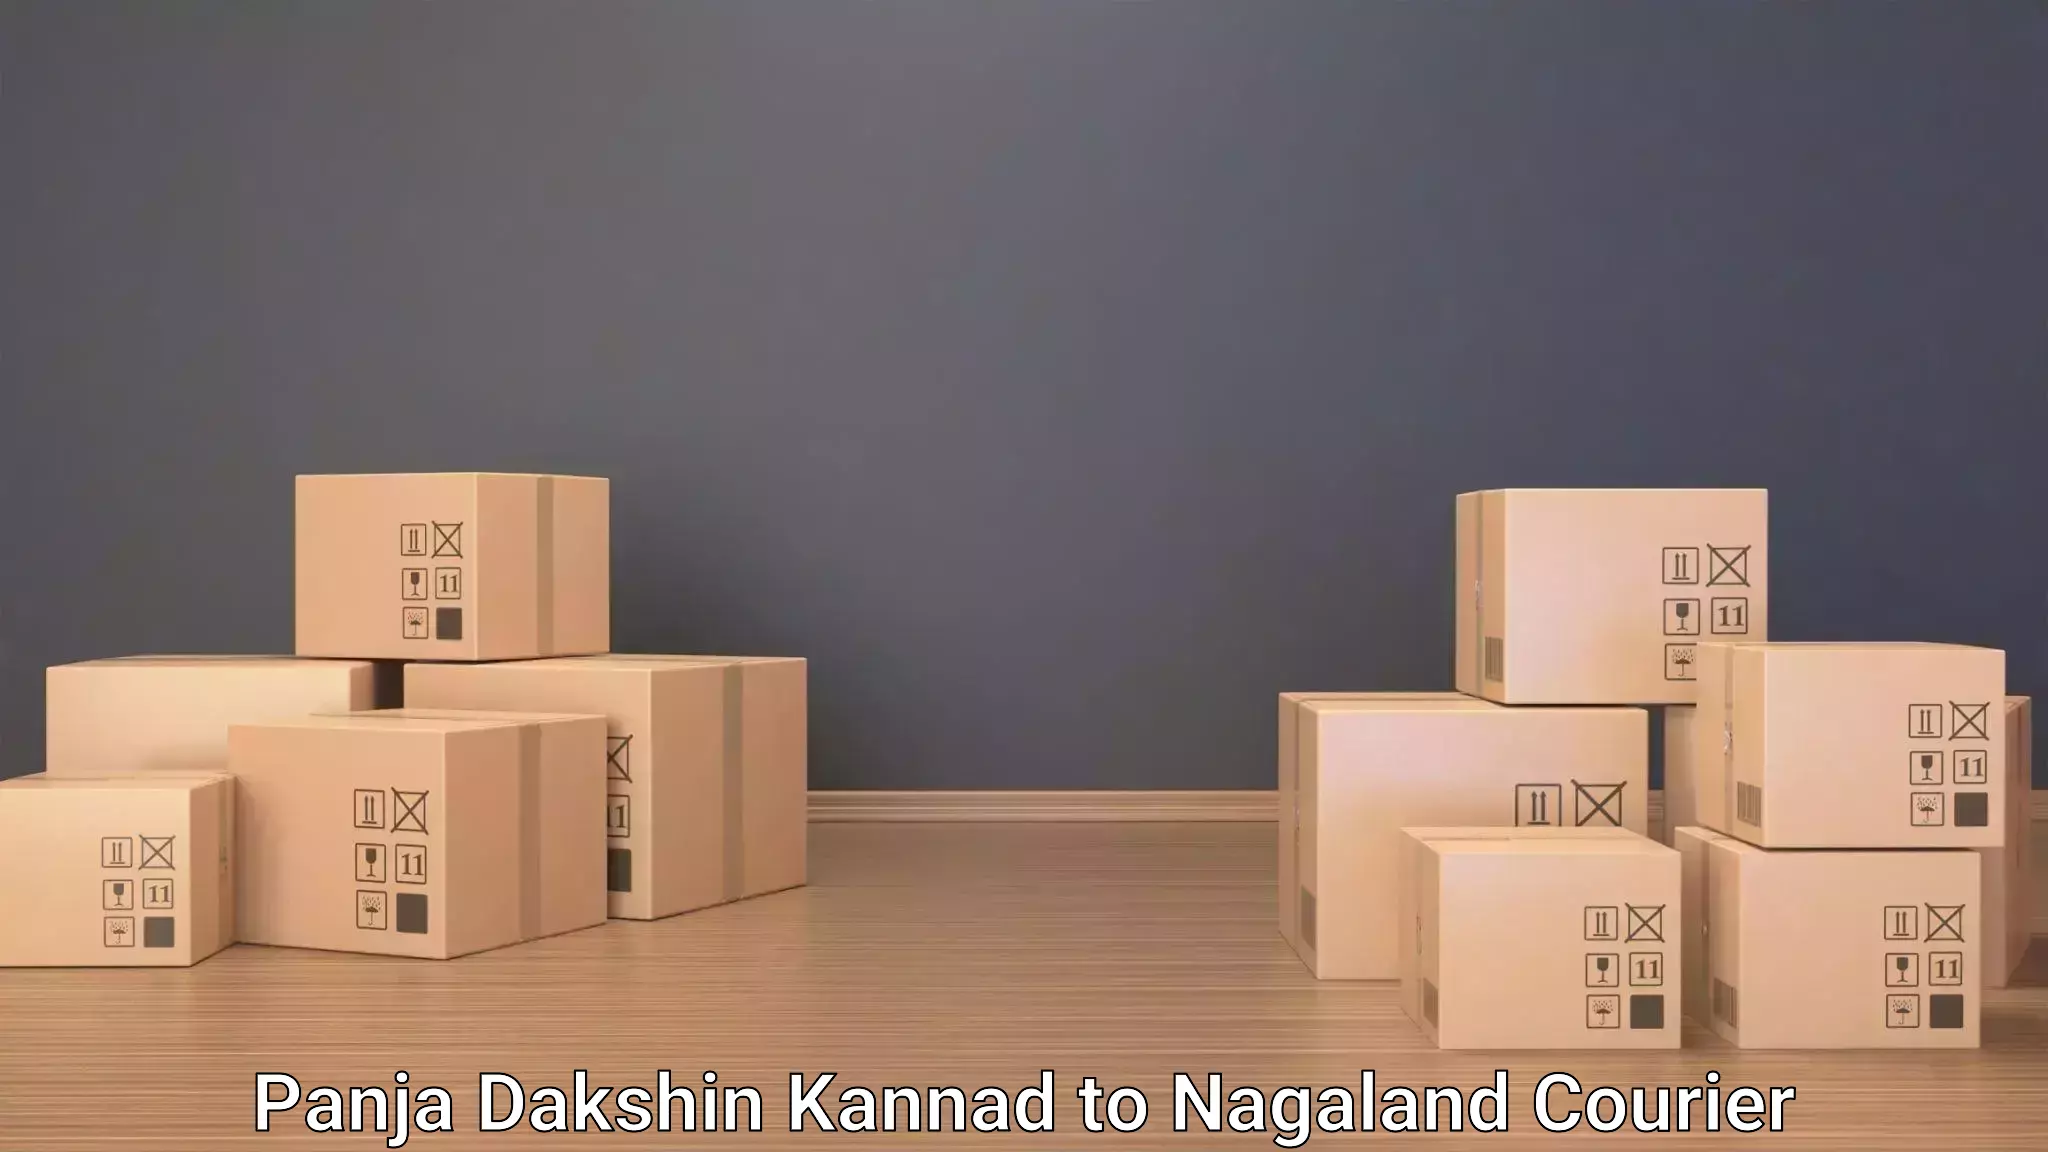 Baggage shipping service Panja Dakshin Kannad to NIT Nagaland